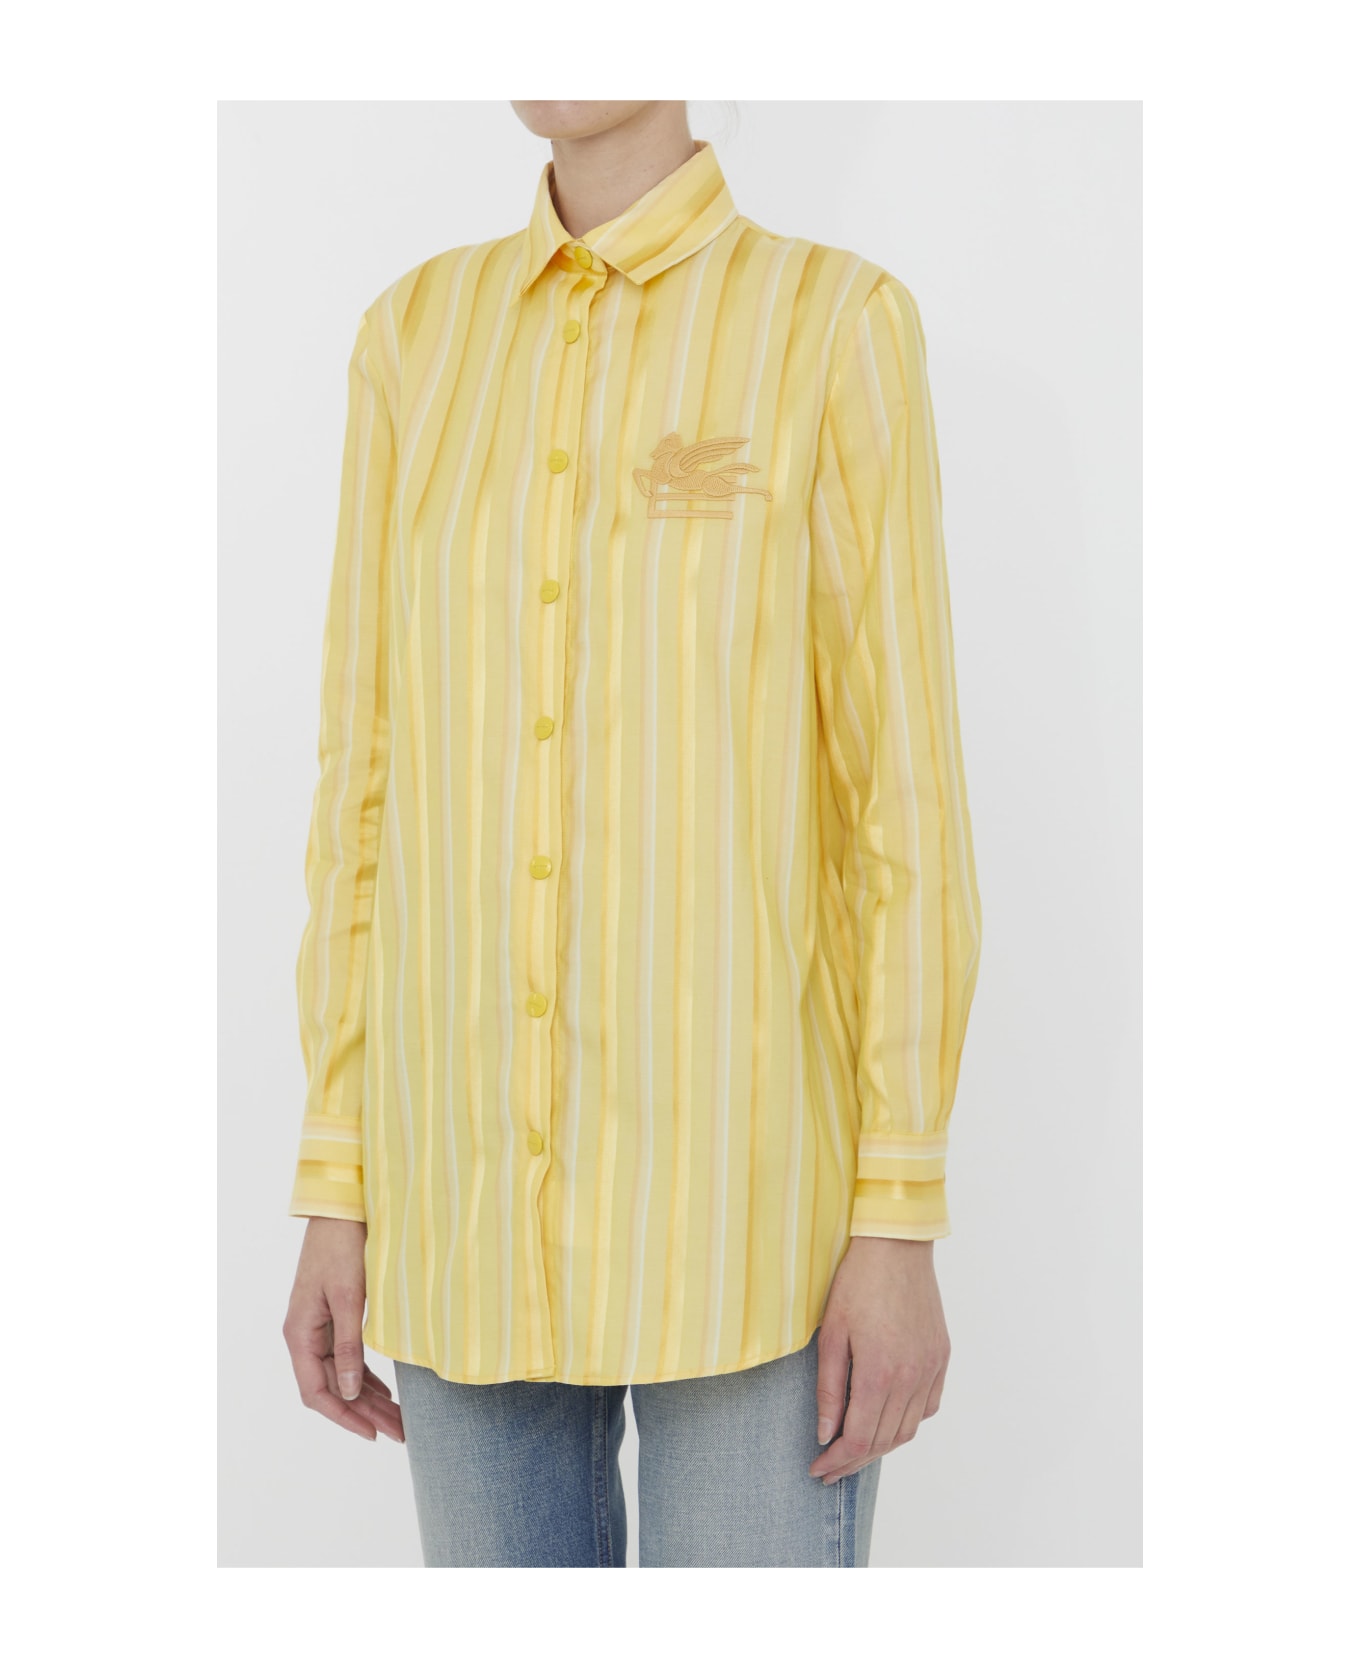 Etro Striped Shirt With Pegaso - Yellow & Orange